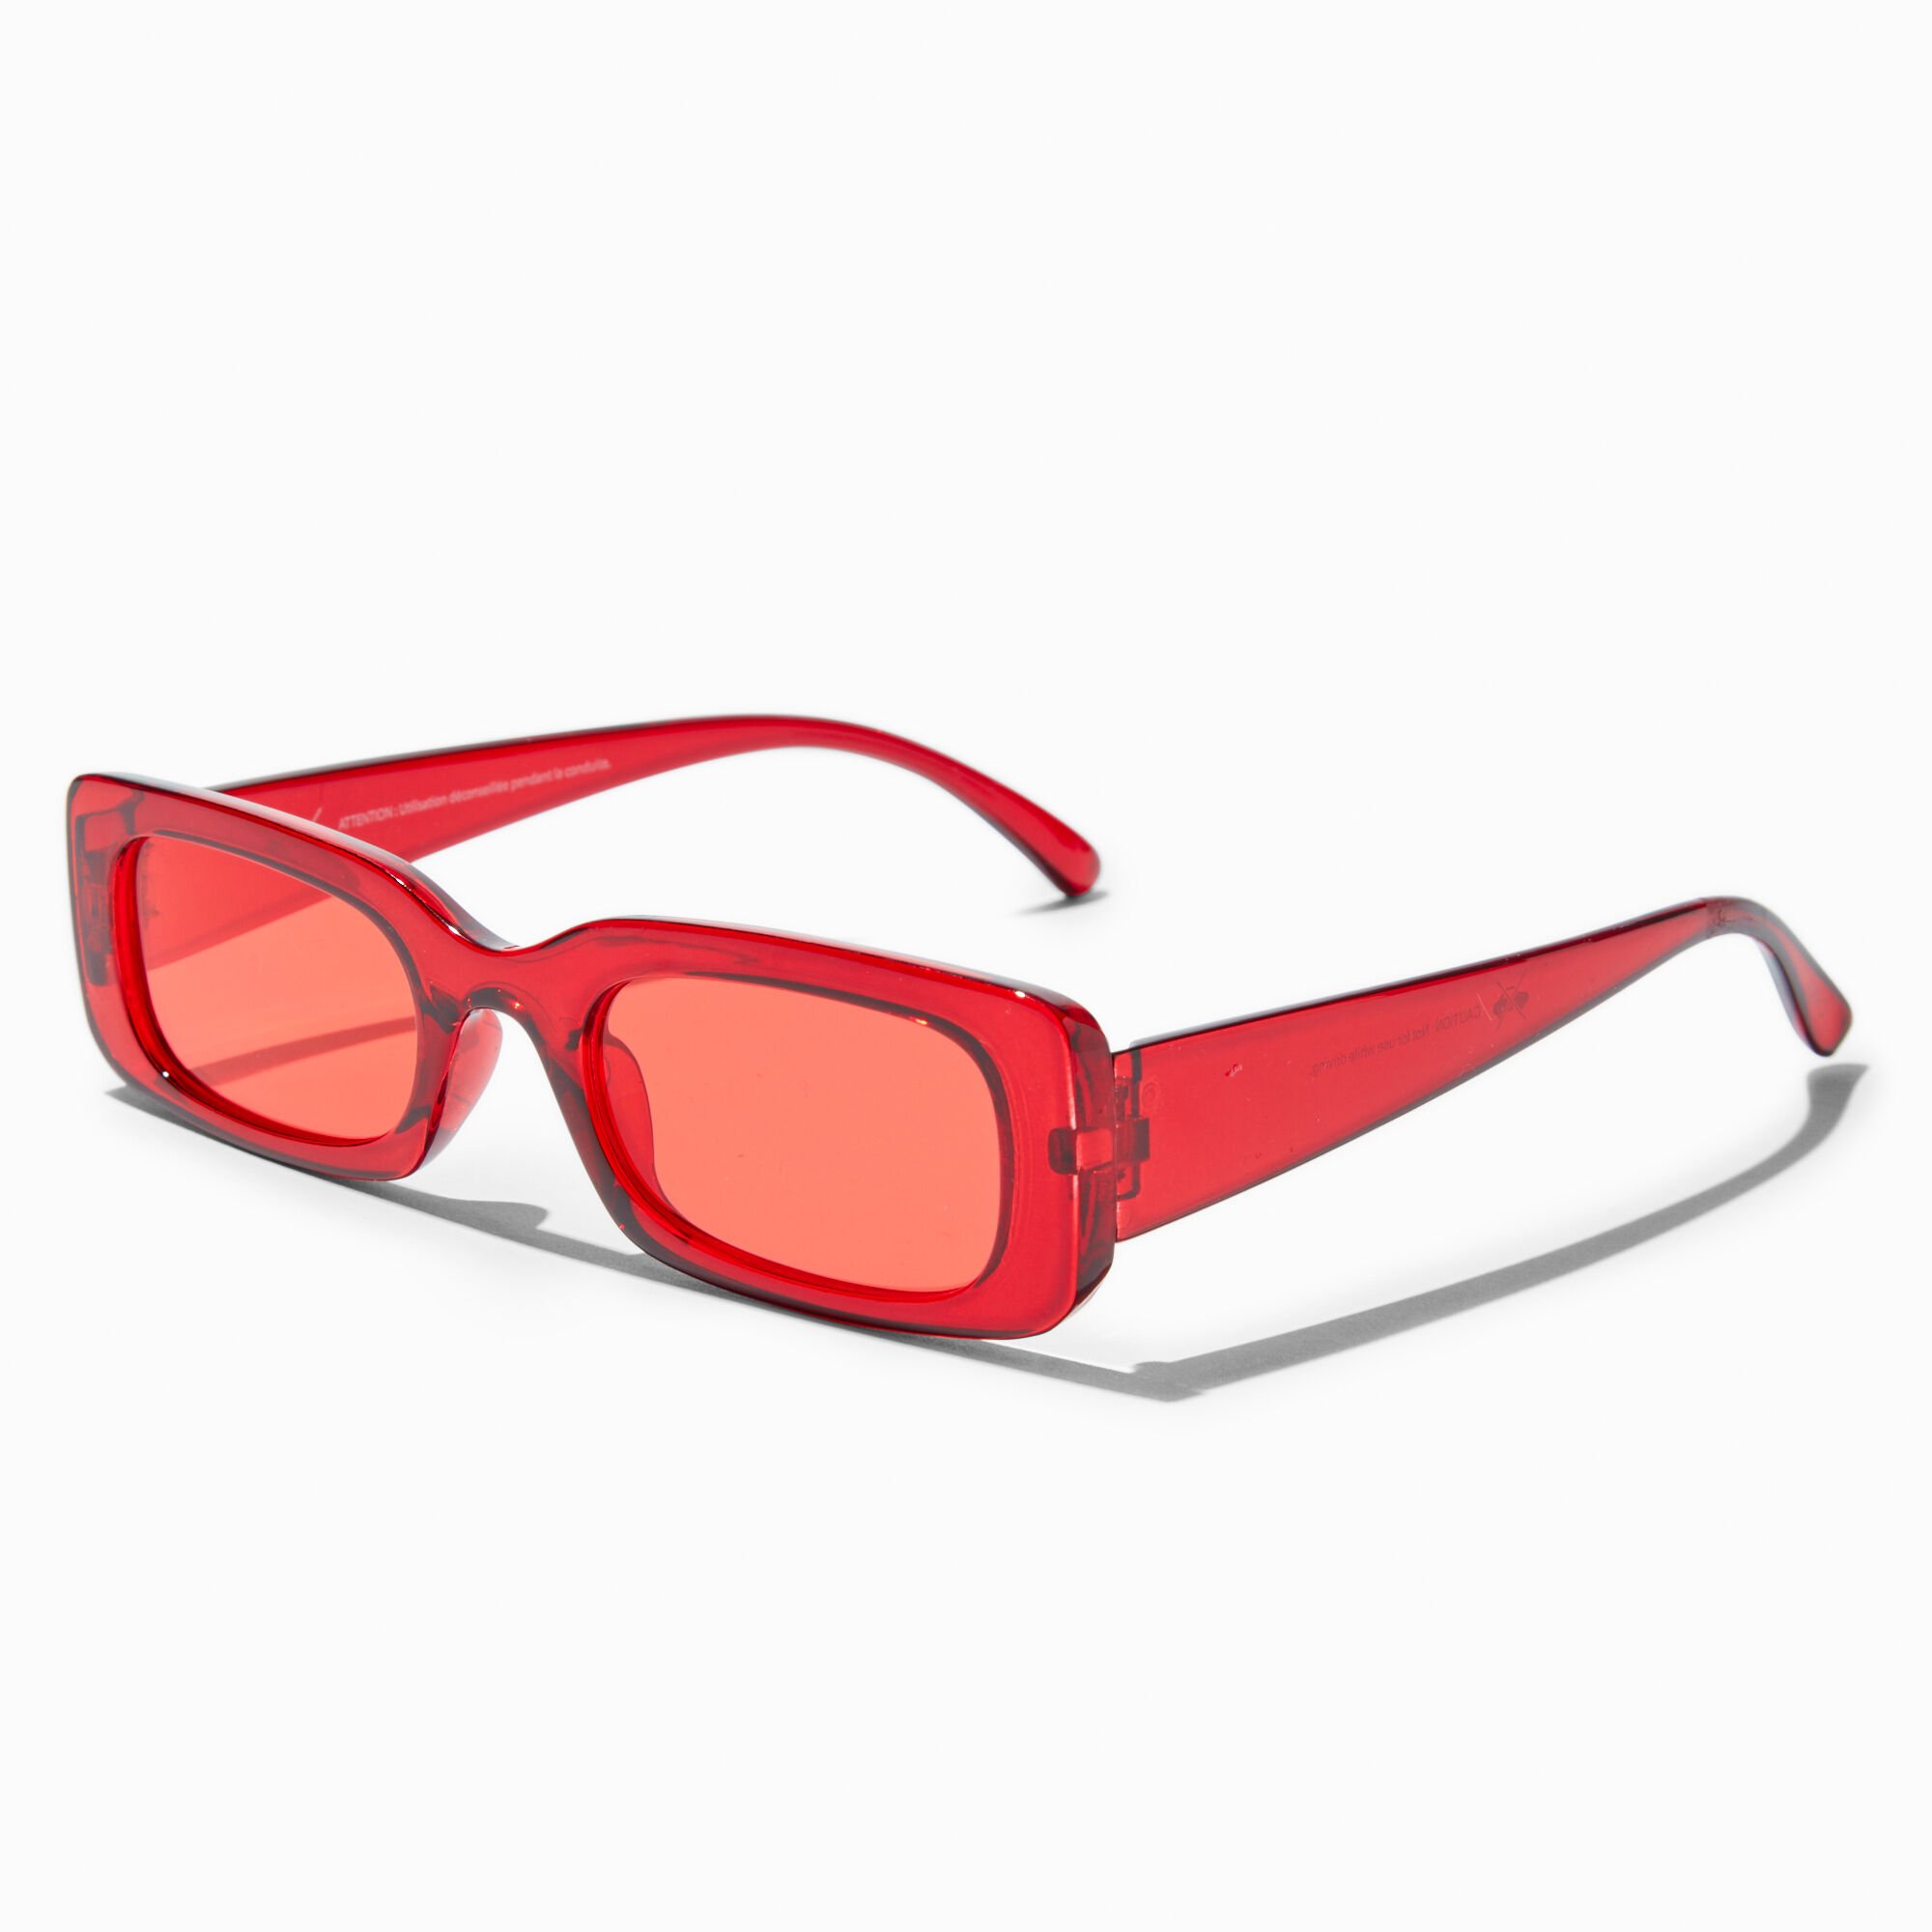 Red Aviator Sunglasses | Captain Blunt's Red-Eye | goodr — goodr sunglasses